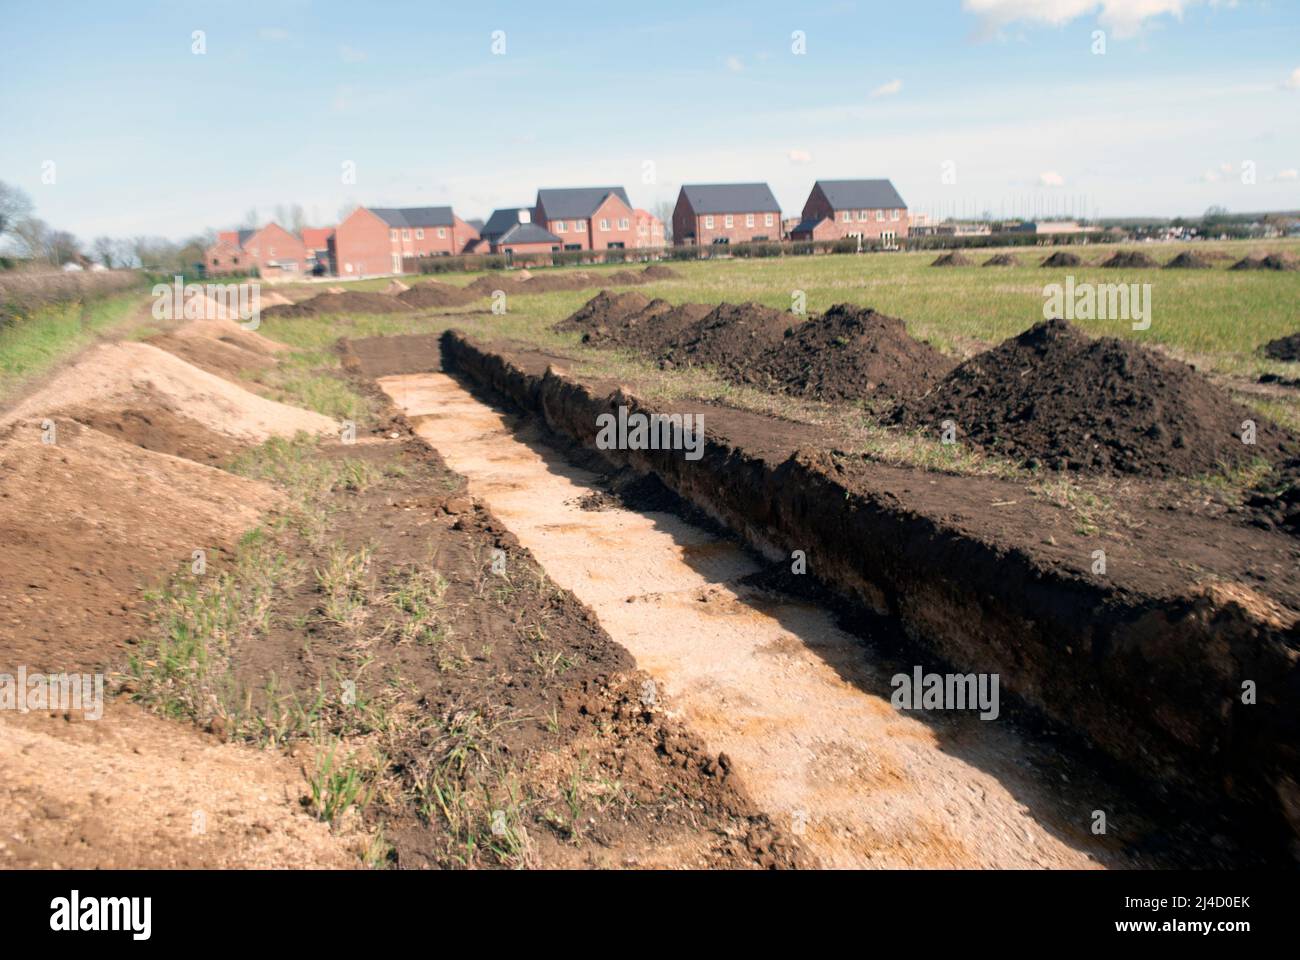 Trincheras excavadas en el campo para el estudio arqueológico con casas de nueva construcción junto al pueblo de Ruskington, Sleaford, Lincolnshire, Inglaterra, Reino Unido Foto de stock